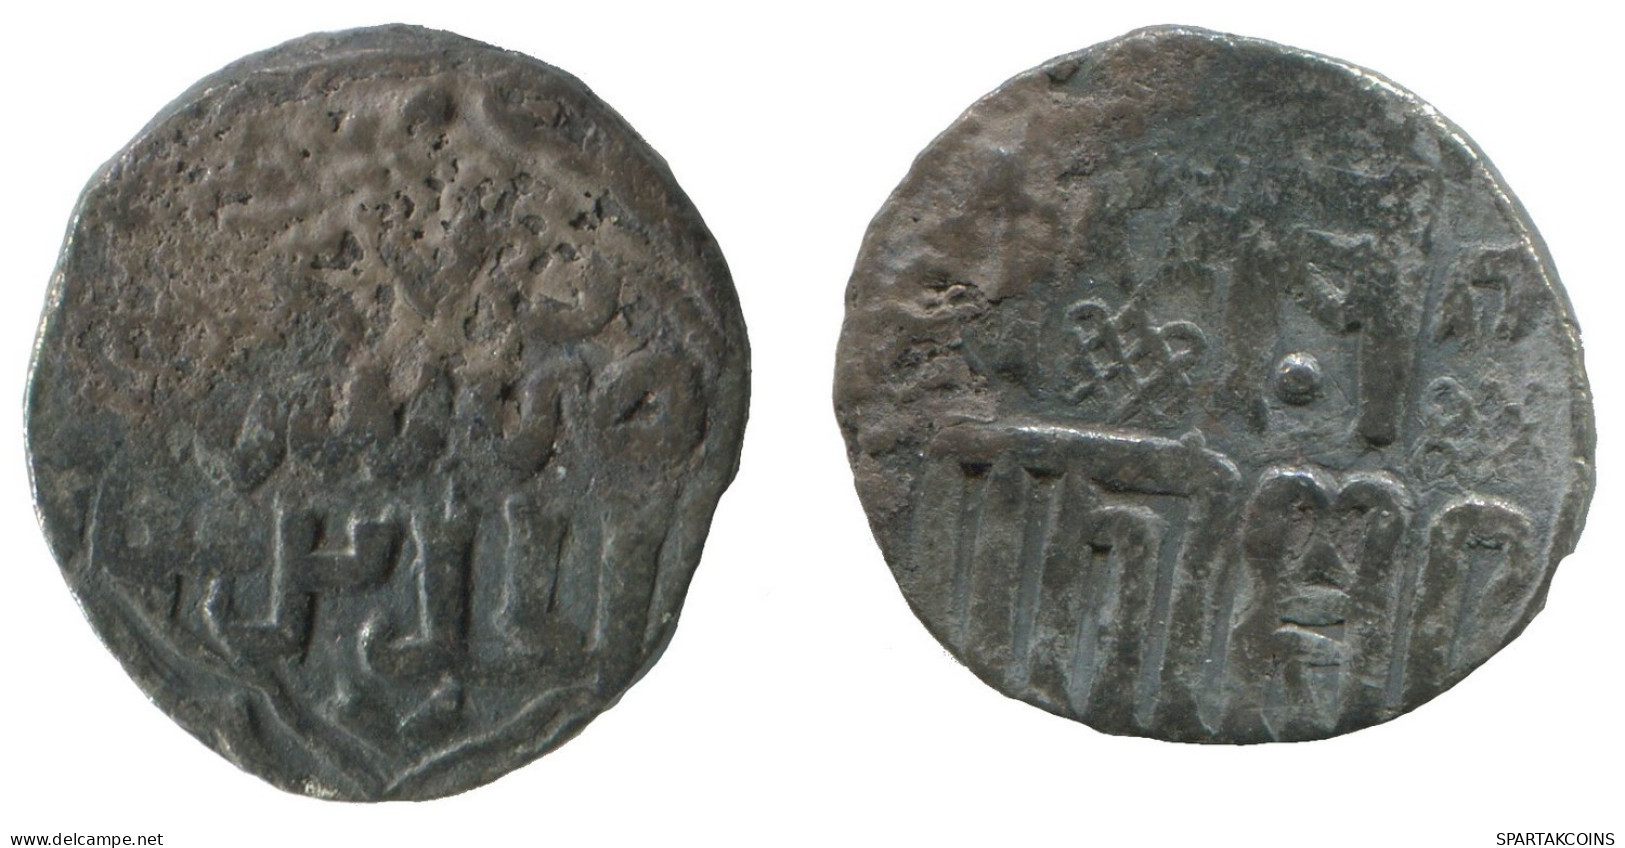 GOLDEN HORDE Silver Dirham Medieval Islamic Coin 1.5g/17mm #NNN2003.8.U.A - Islamic